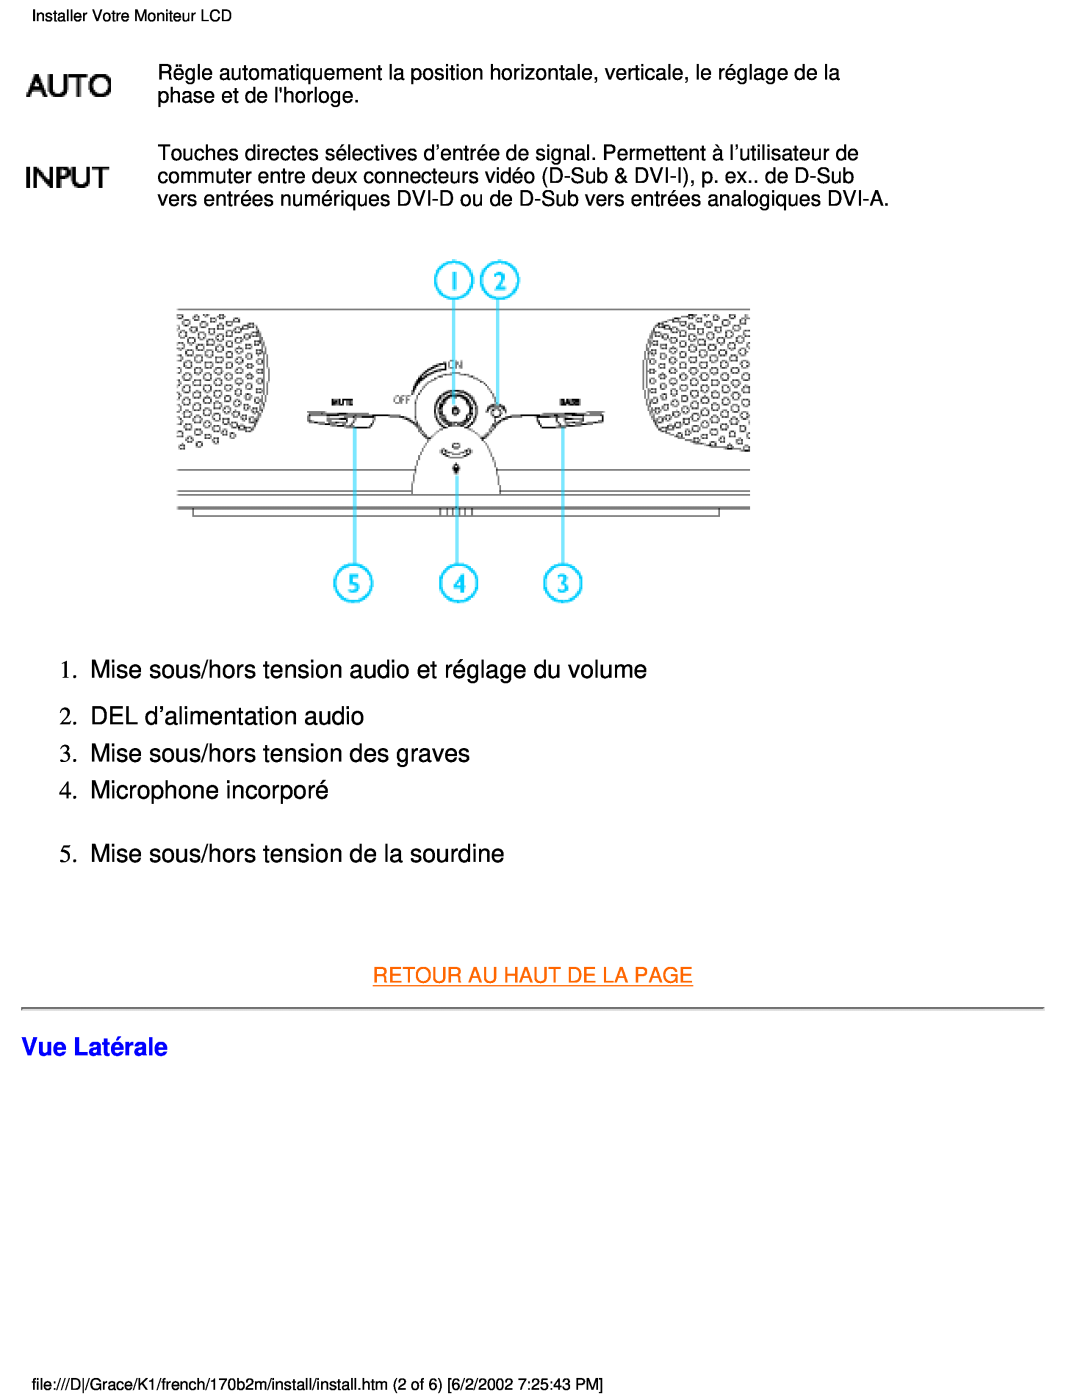 Philips 170B2M user manual Mise sous/hors tension audio et réglage du volume, Vue Latérale, Retour Au Haut De La Page 